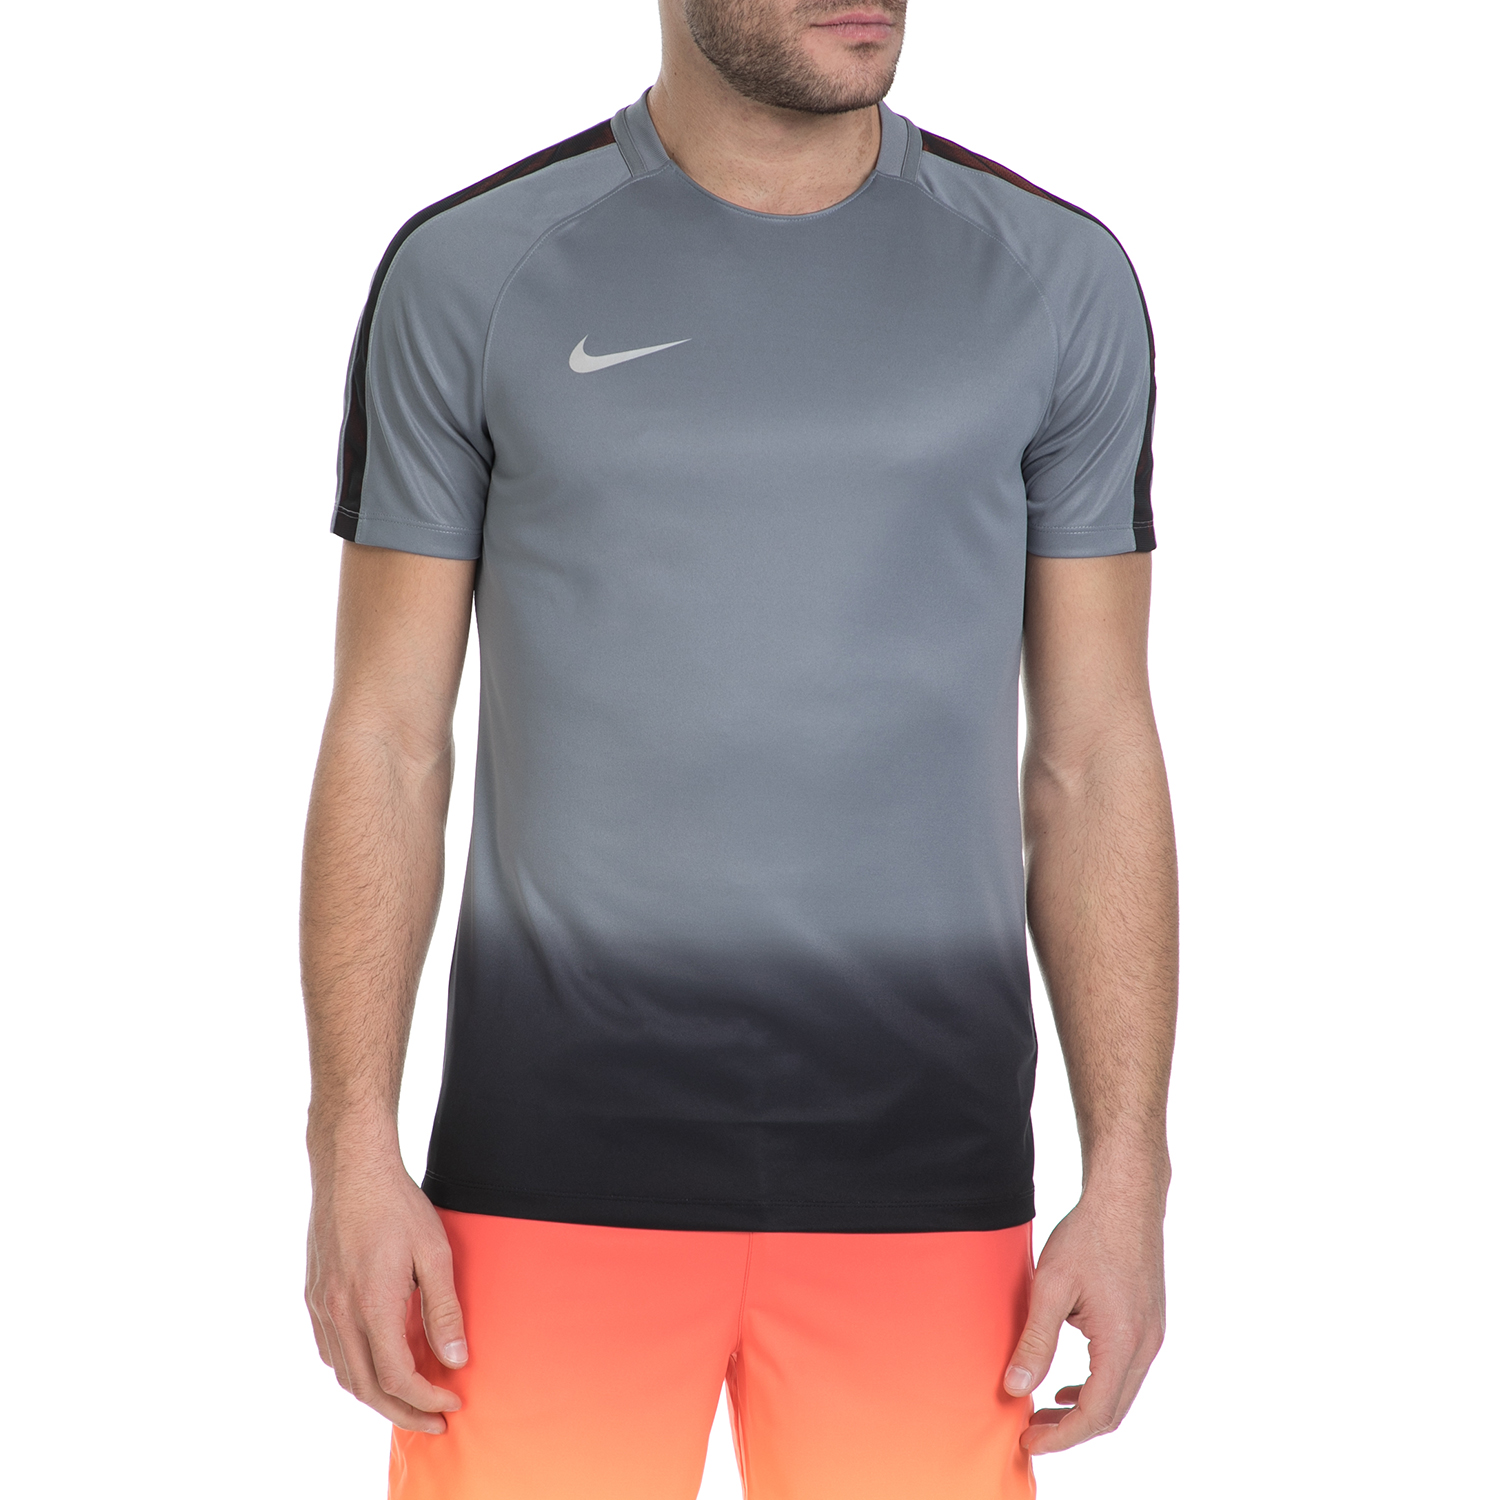 Ανδρικά/Ρούχα/Αθλητικά/T-shirt NIKE - Αθλητική κοντομάνικη μπλούζα Nike σκούρο γκρι